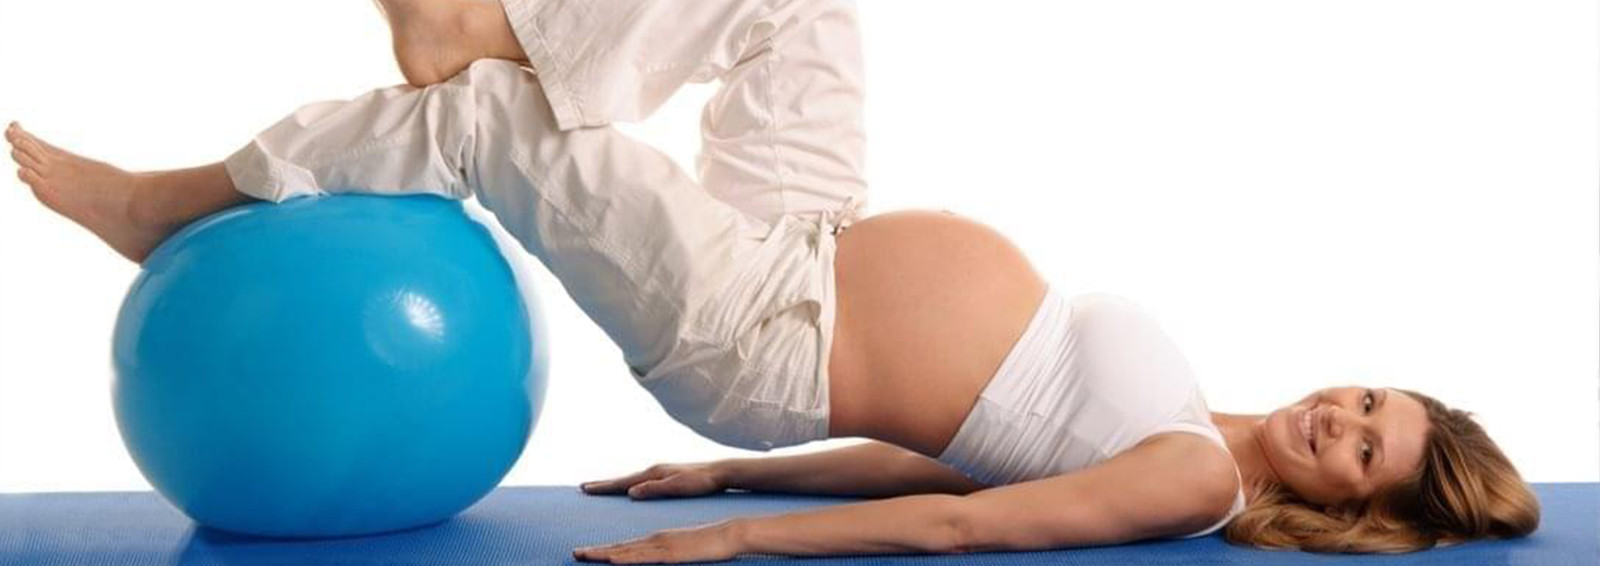 Pilates para Embarazadas - Fisioterapeutas - Cuidados de la Mujer